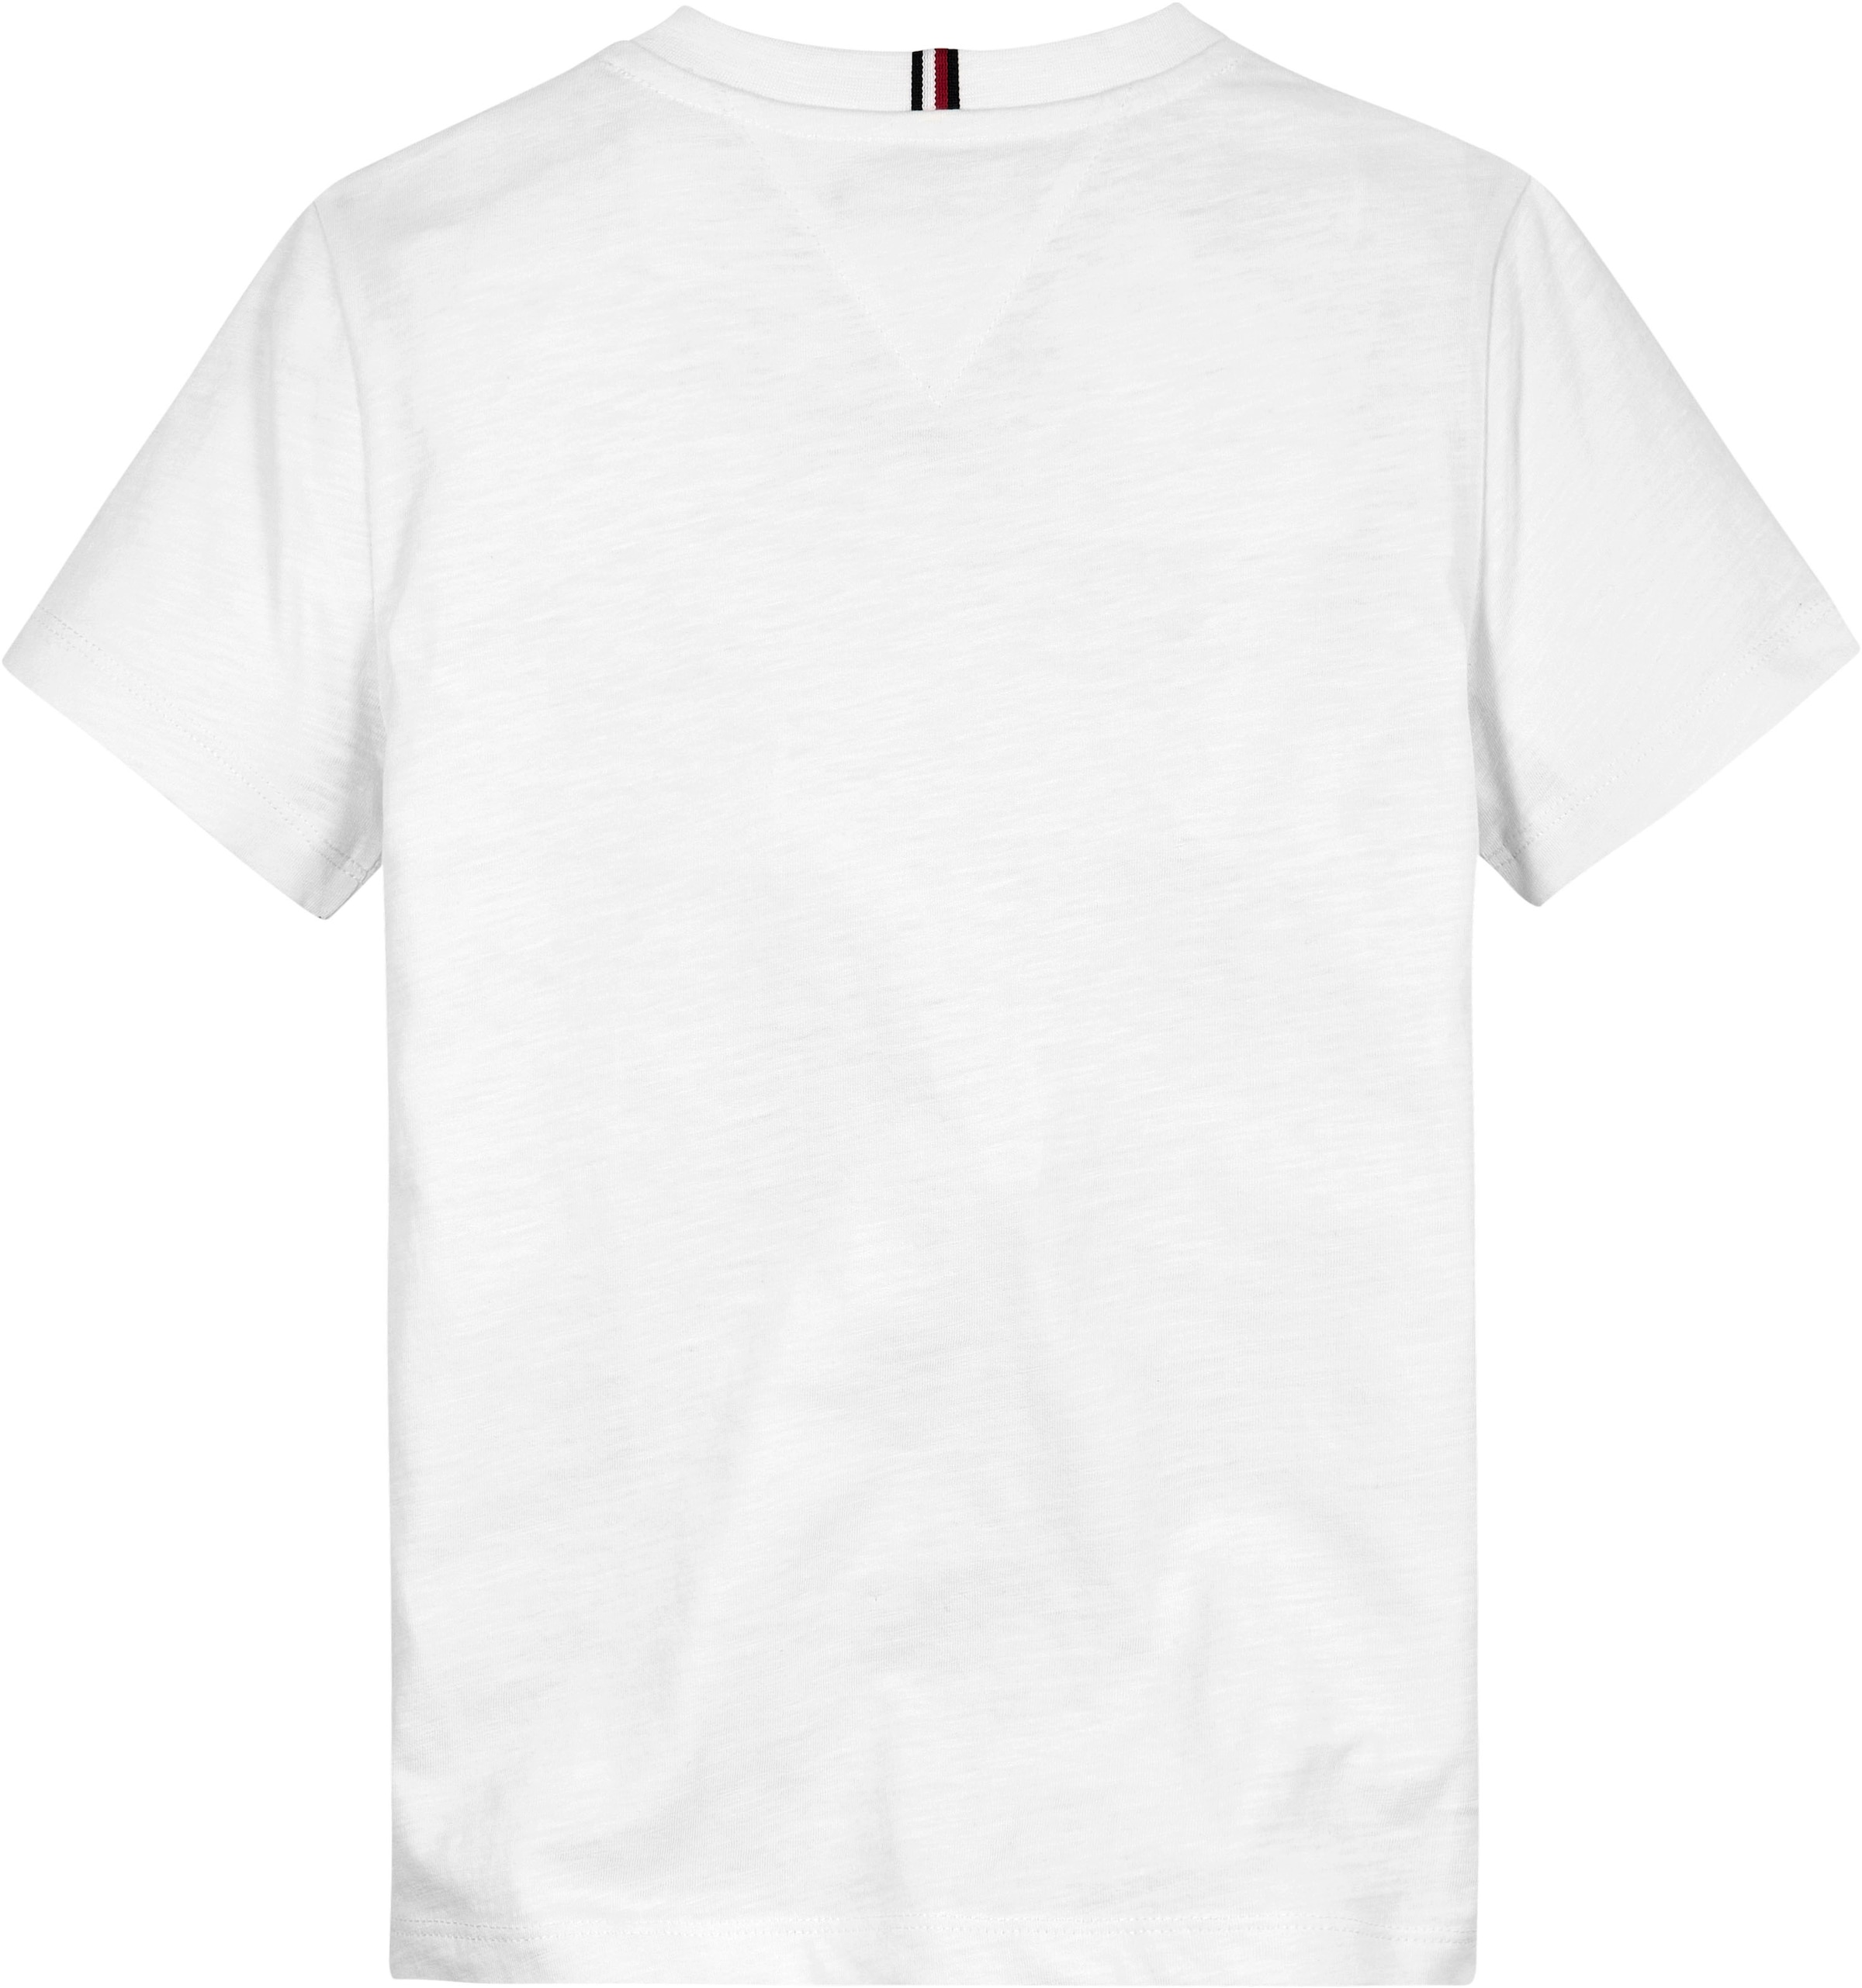 Tommy Hilfiger T-Shirt »FUN TEE S/S«, Baby bis 2 Jahre, mit grossem Frontprint